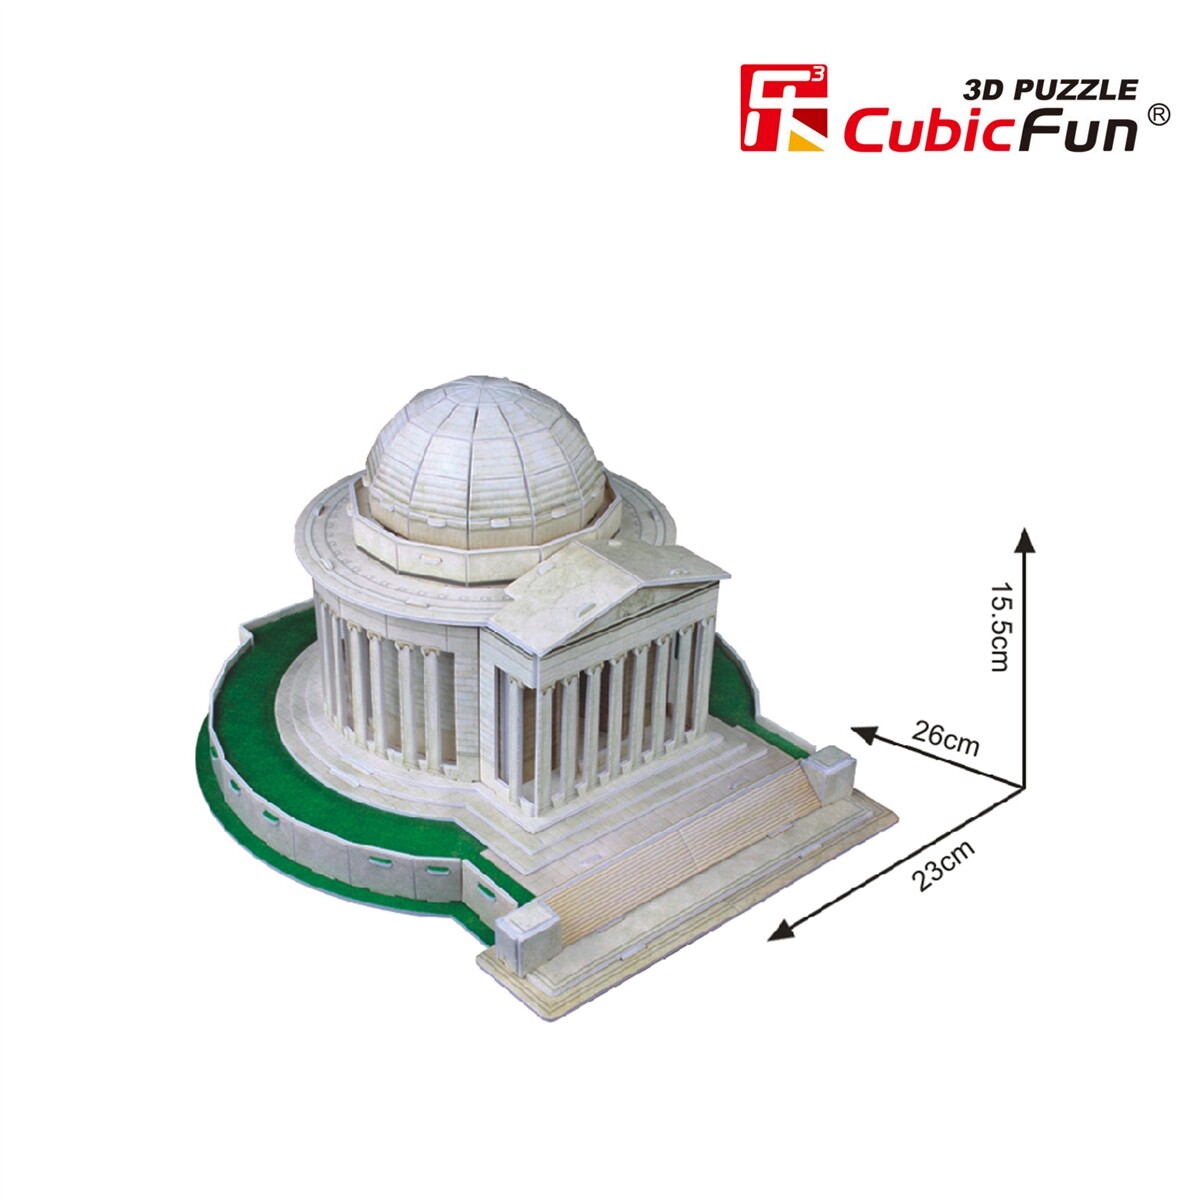 จิ๊กซอว์ อนุสรณ์สถาน โมเดล เจฟเฟอร์สัน อเมริกา ของตกแต่งบ้าน 3D Jefferson Memorial CubicFun 3D Puzzle